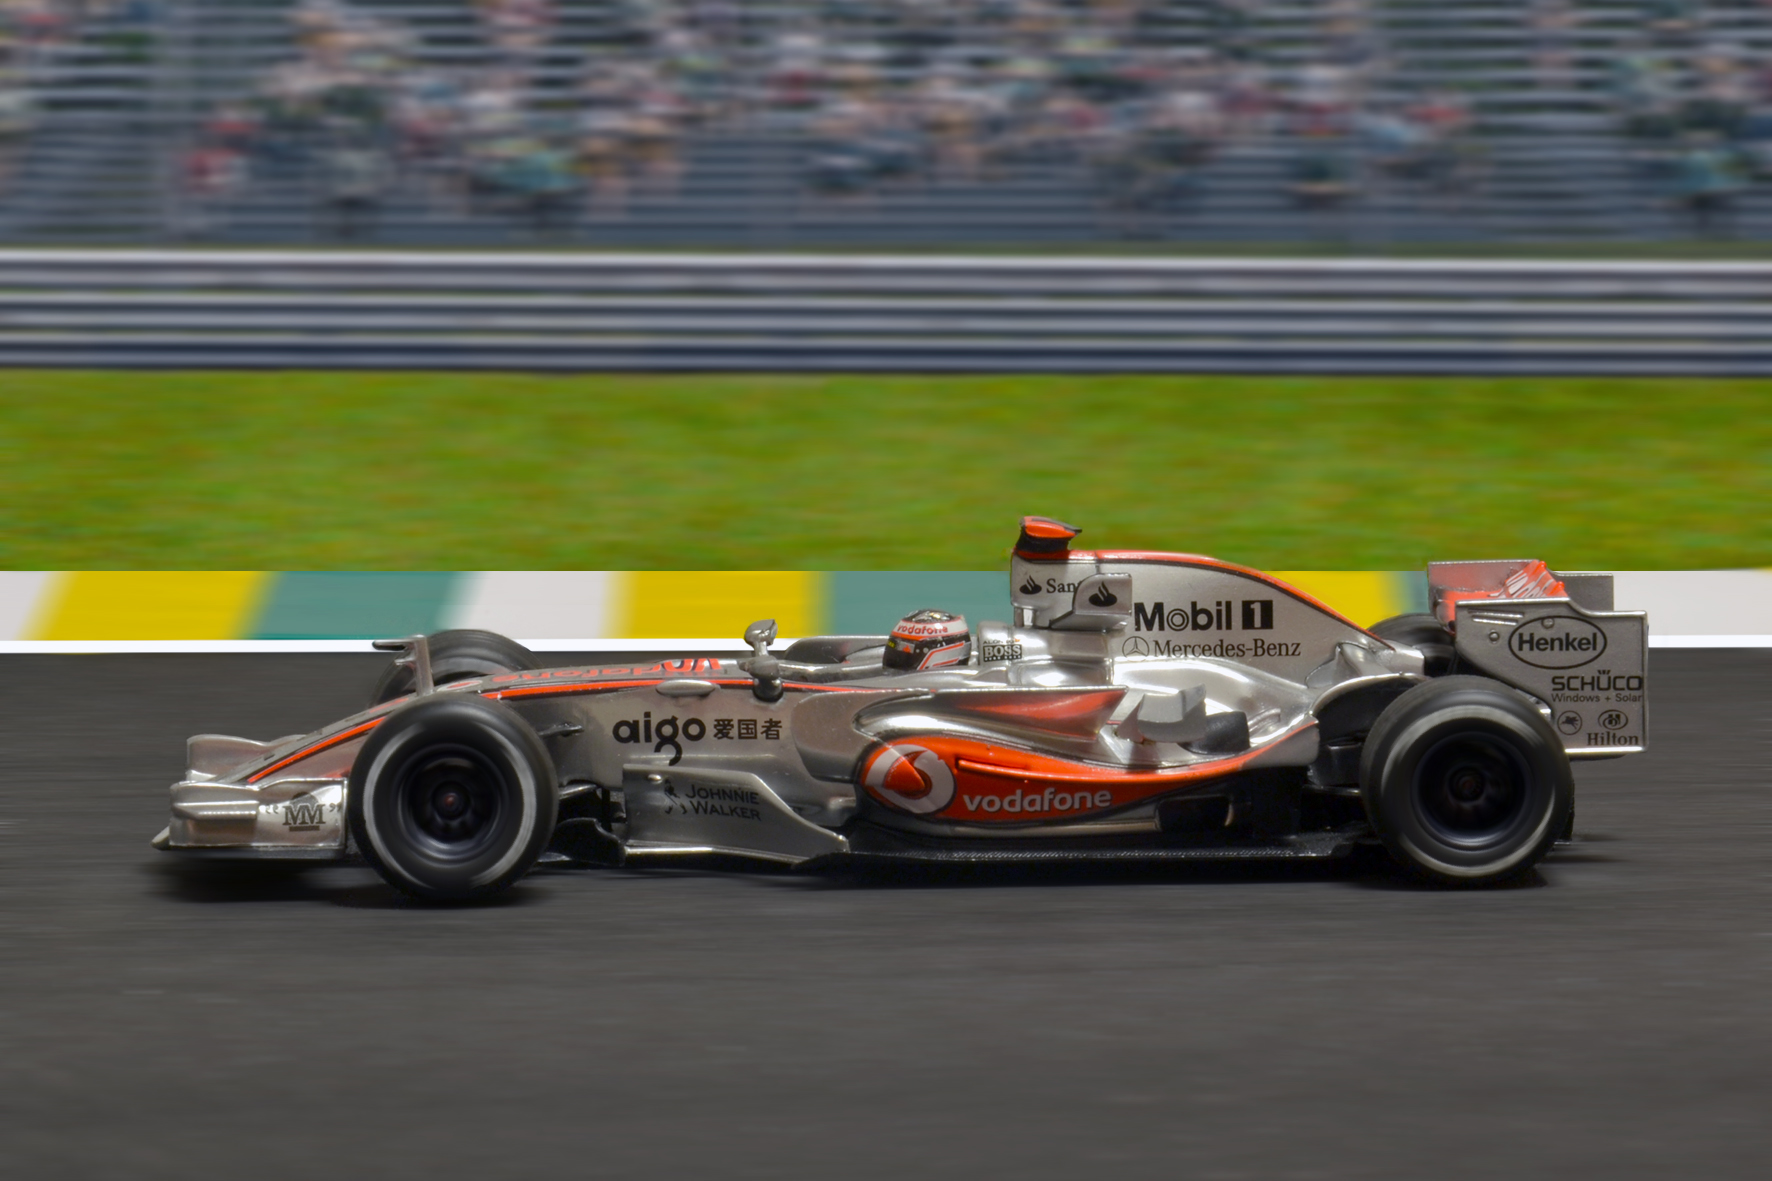 McLaren MP4/22 Fernando Alonso 2007 - Minichamps 1:43